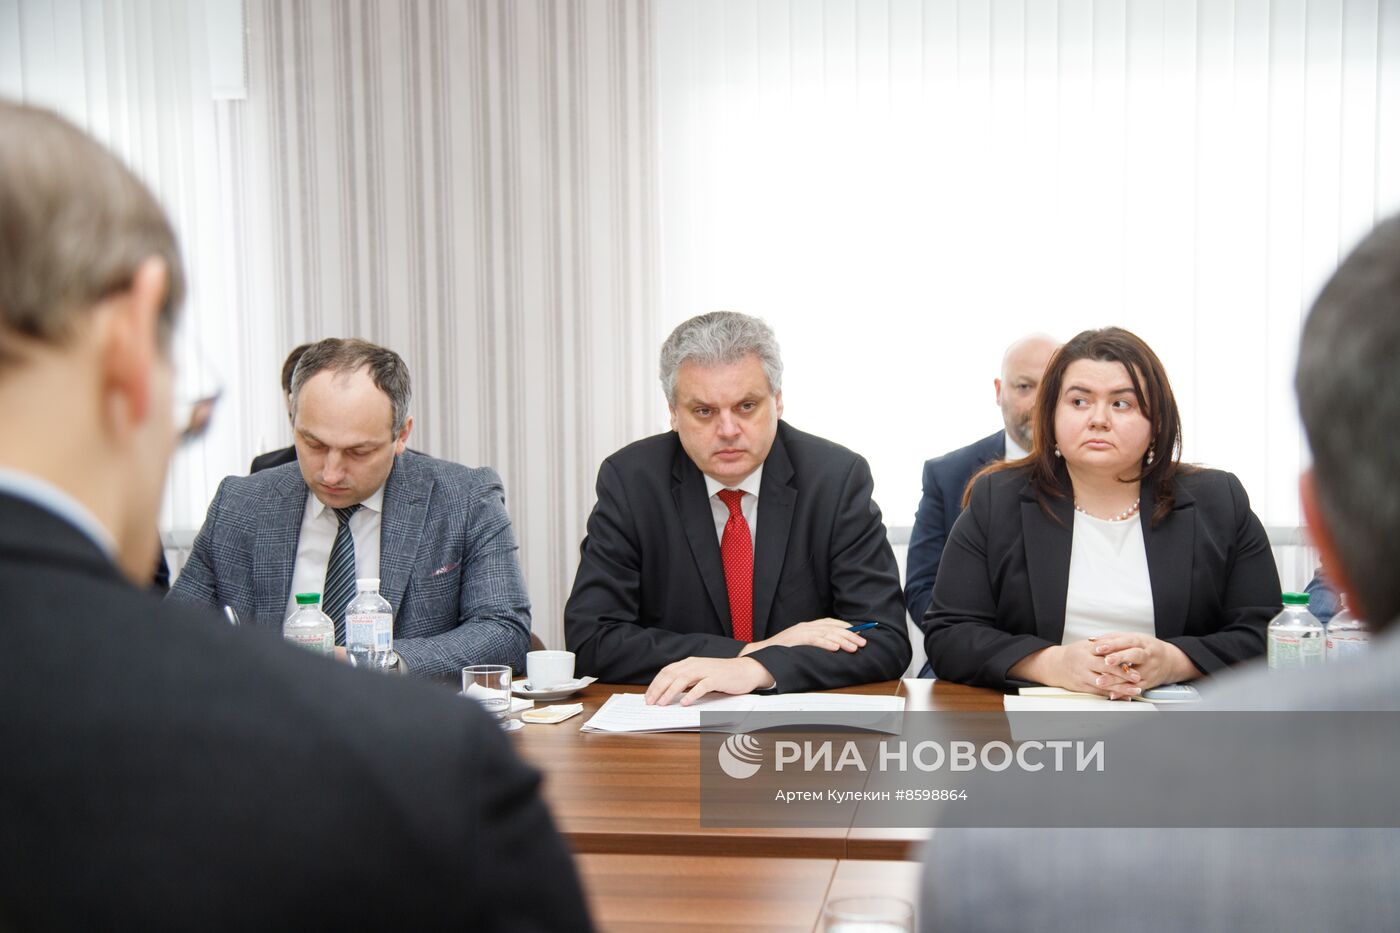 Встреча представителей Приднестровья и Молдовы по политическим вопросам 